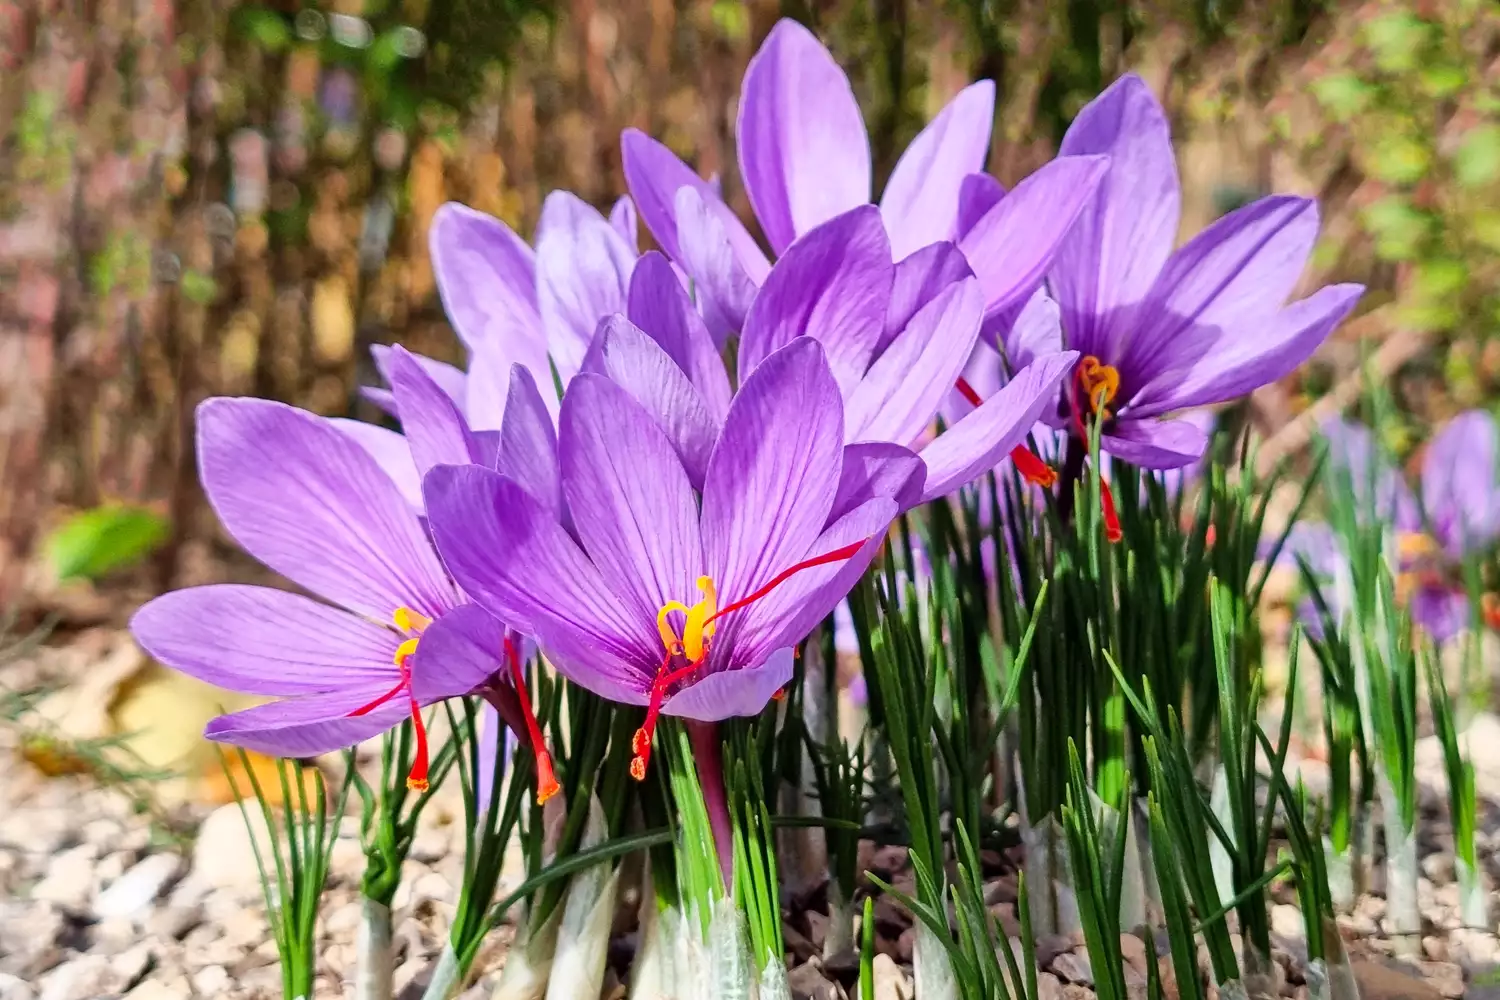 Saffron flowers or Crocus sativus